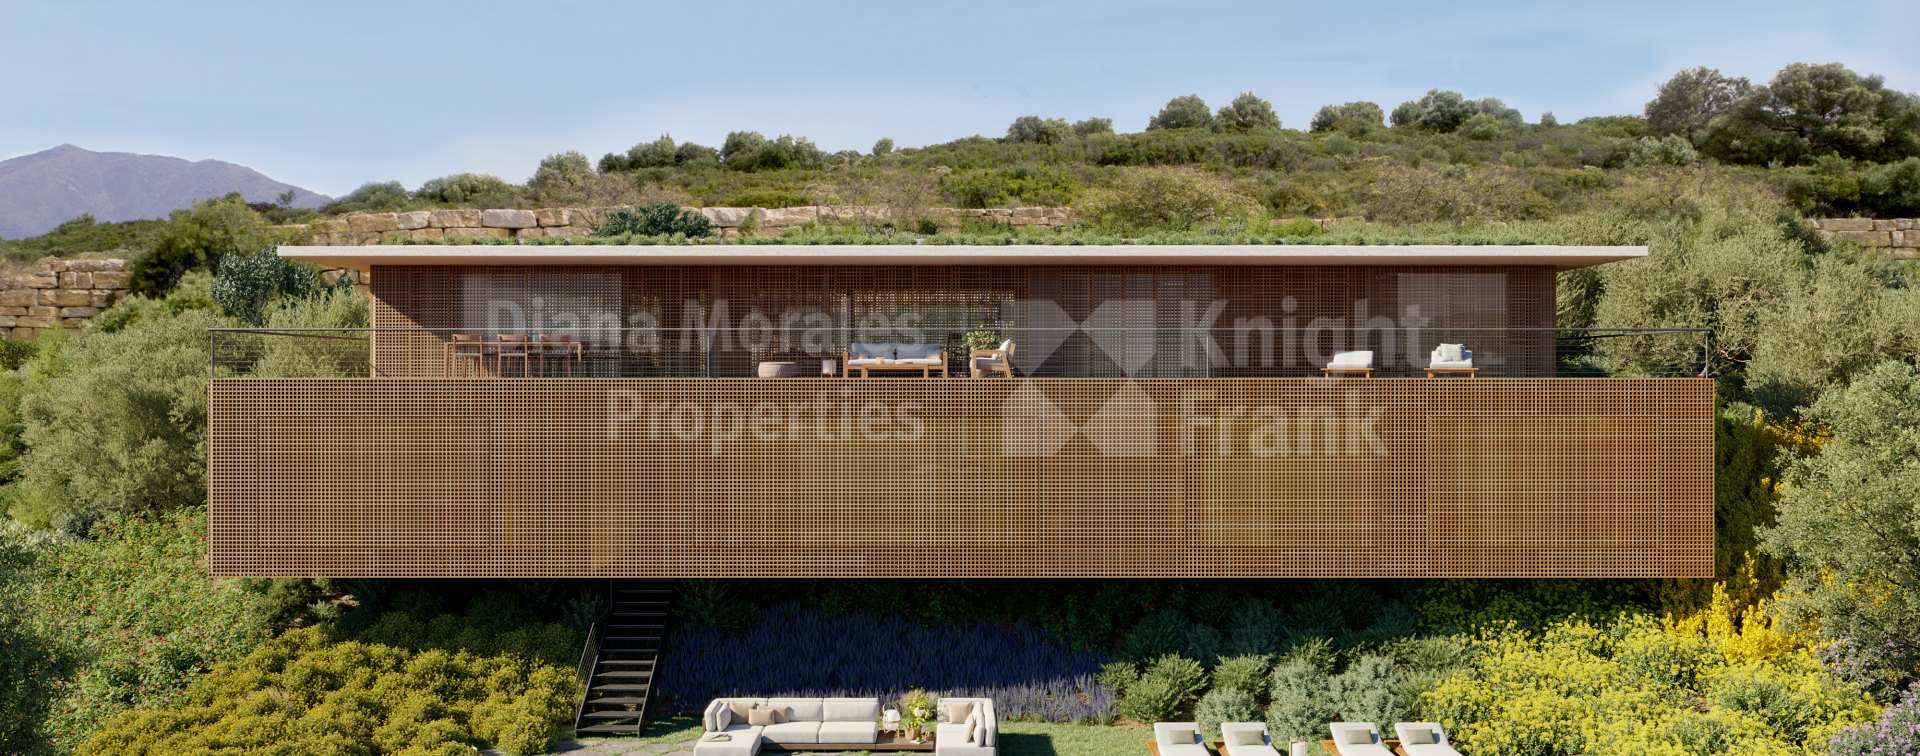 Finca Cortesin, Proyecto llave en mano para una Villa de diseño exquisito en complejo residencial de lujo